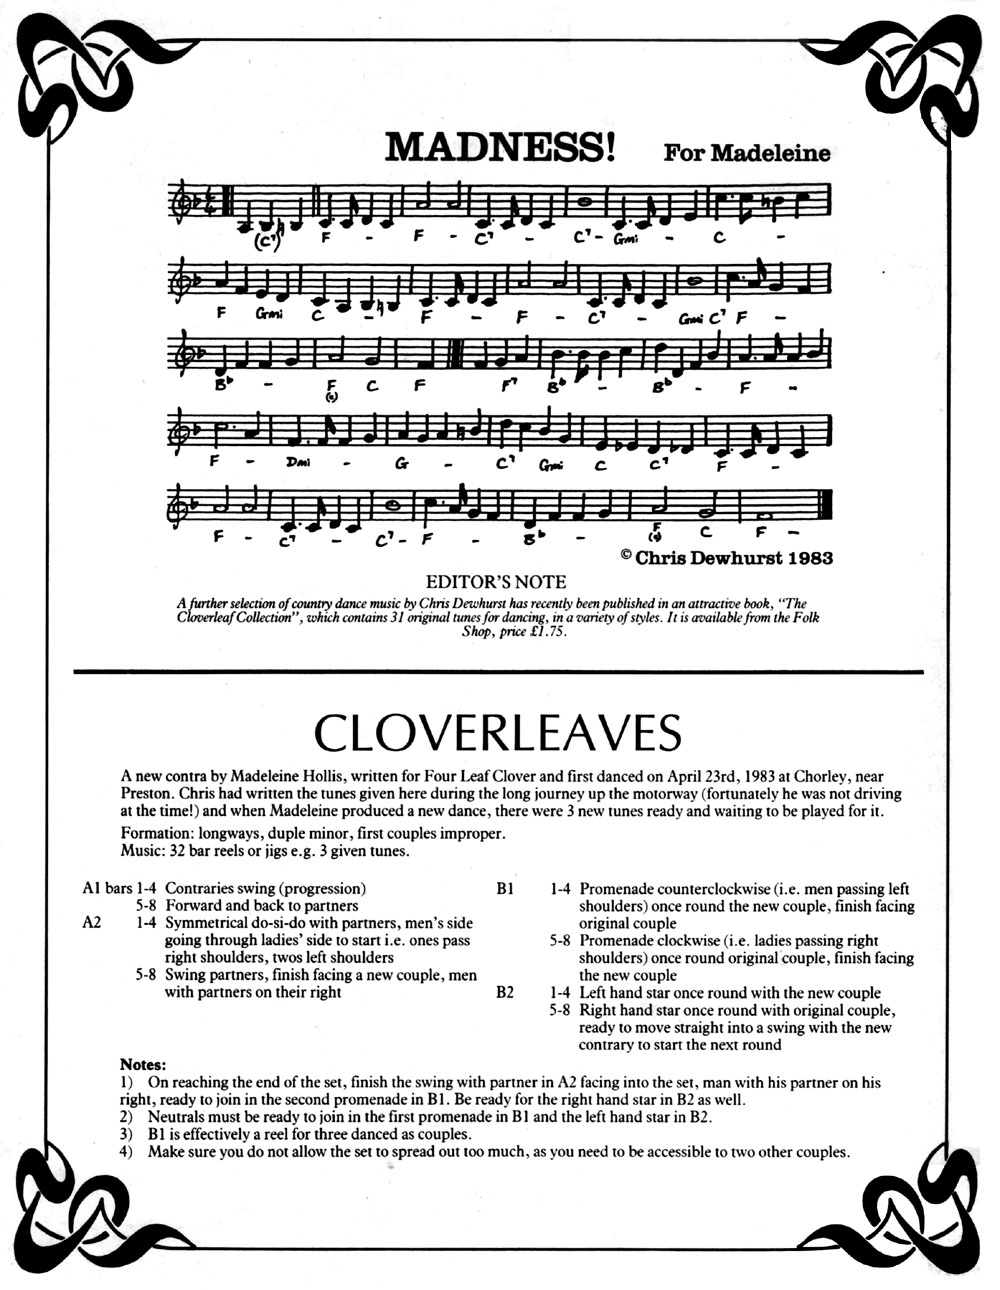 Cloverleaves